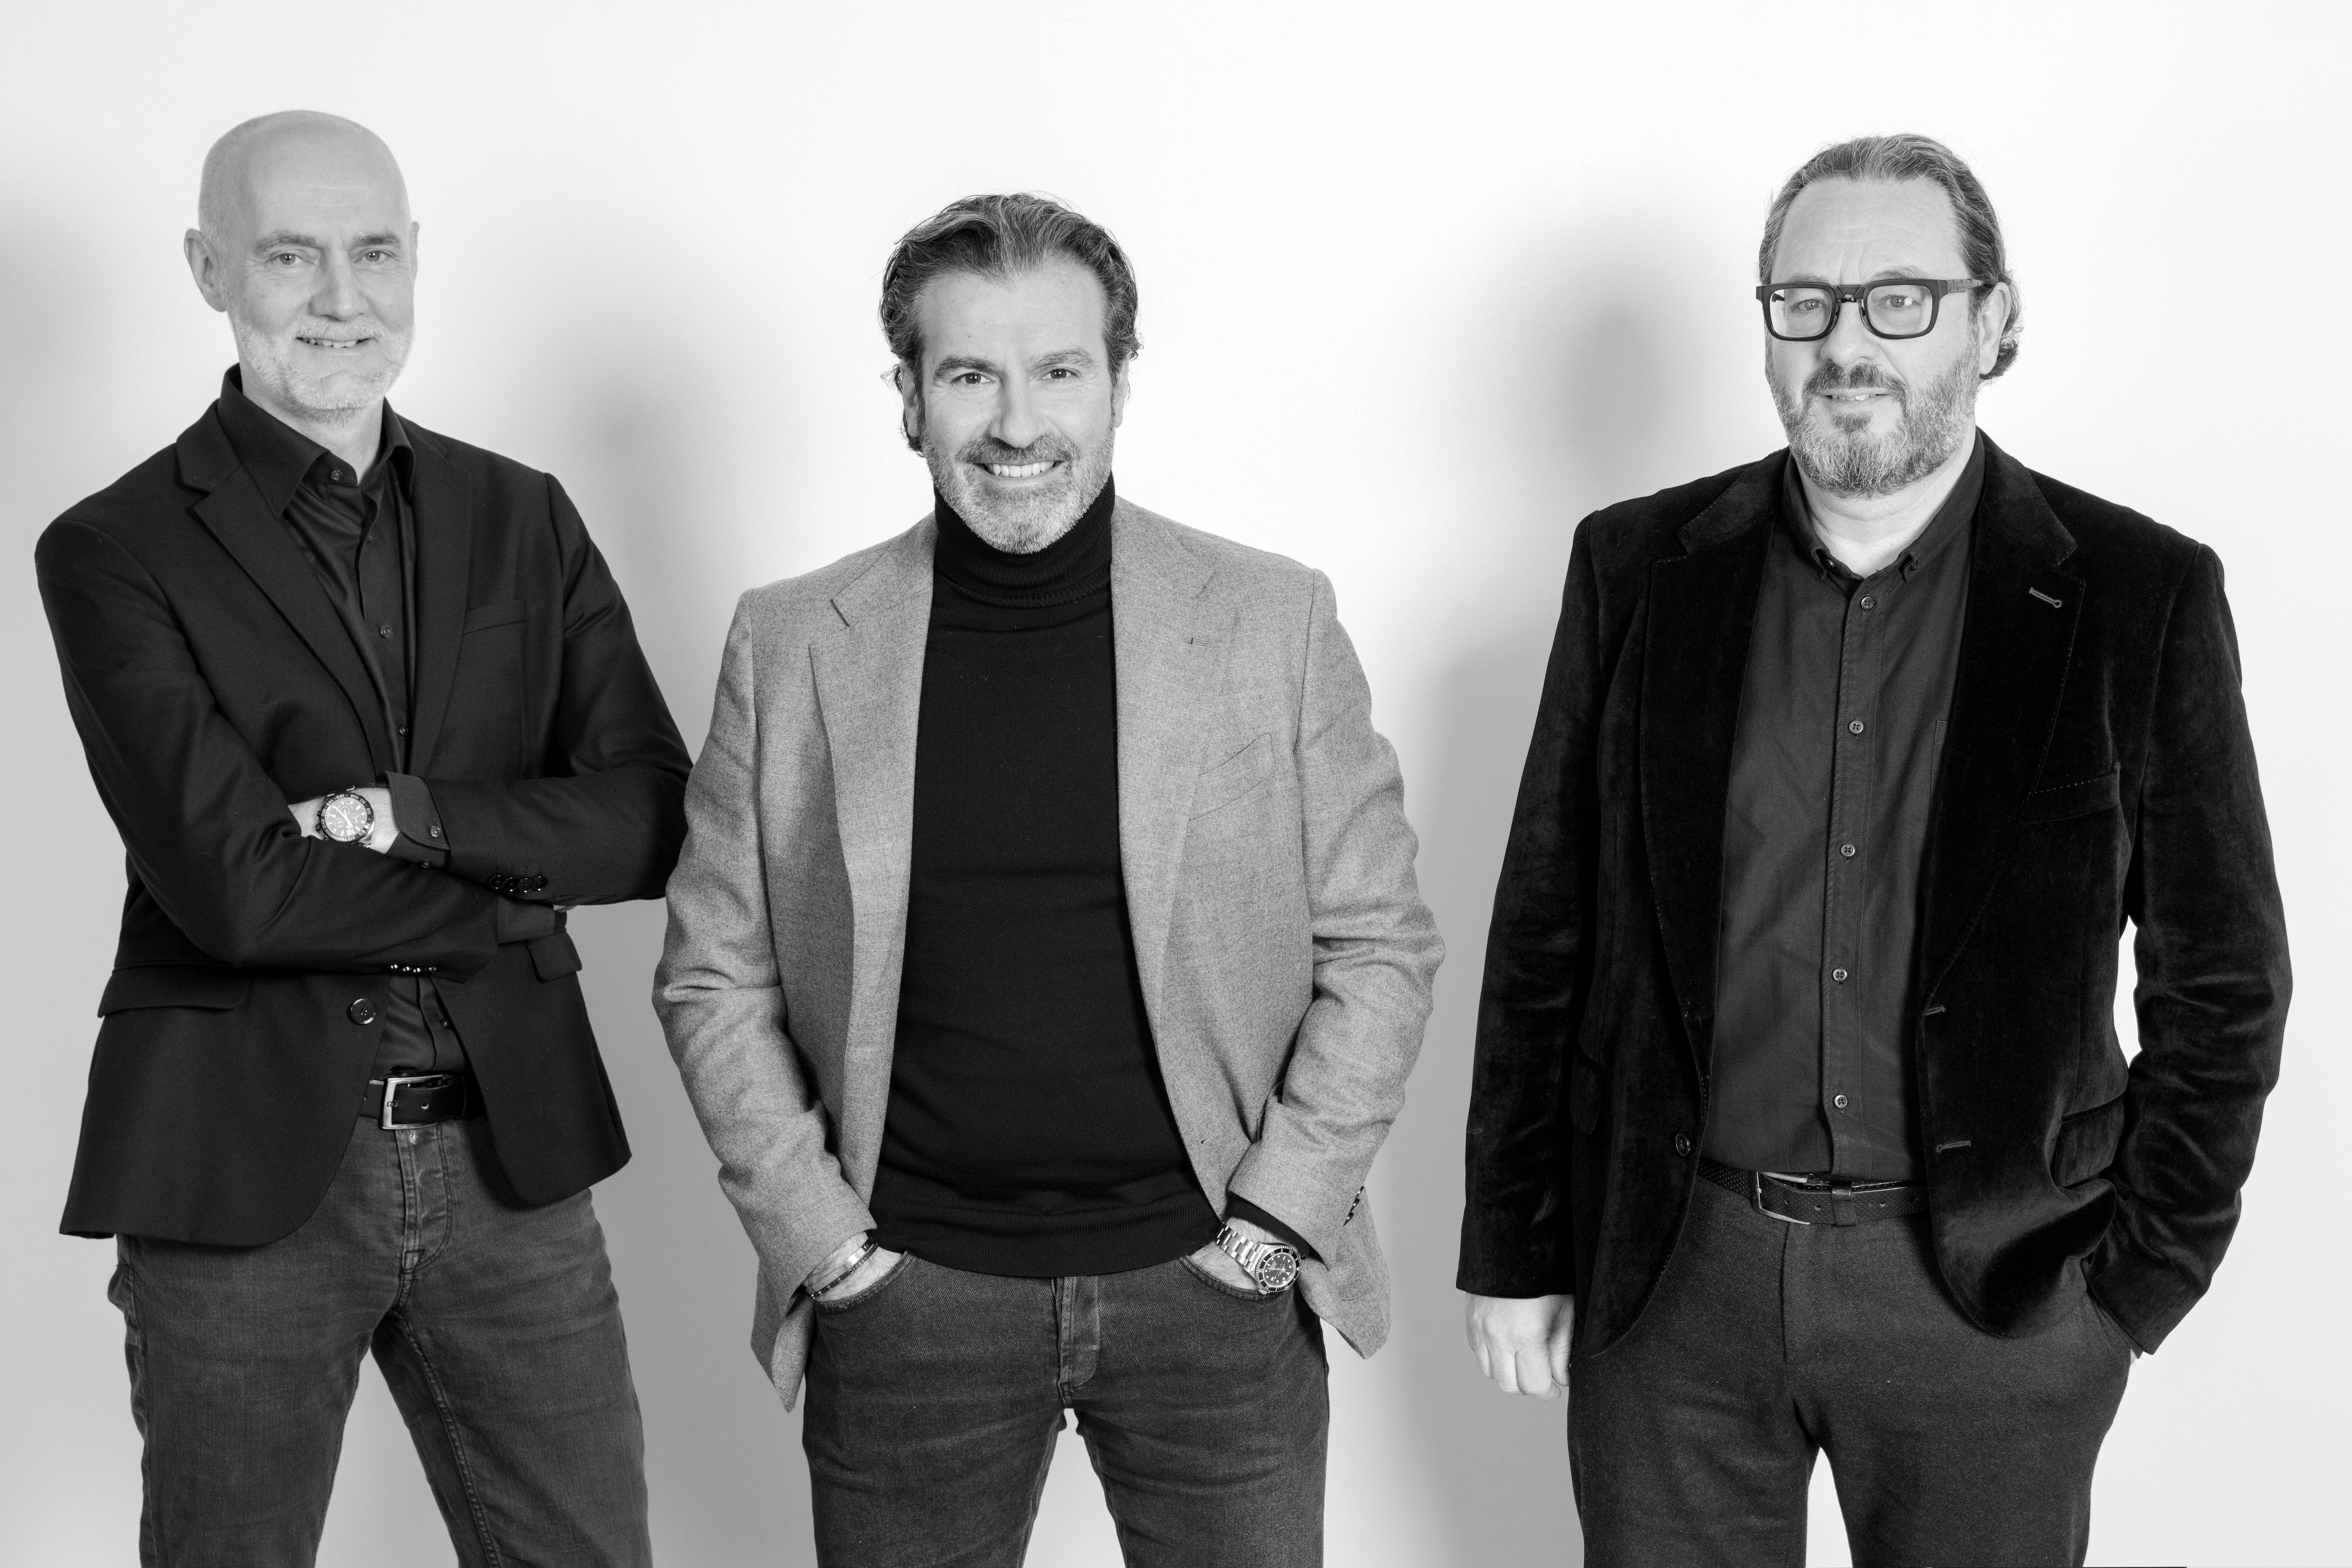 Van links naar rechts: Alain Frisson, secondfloor; Olivier Bialek, secondfloor; Erik Struys, UPR Agency